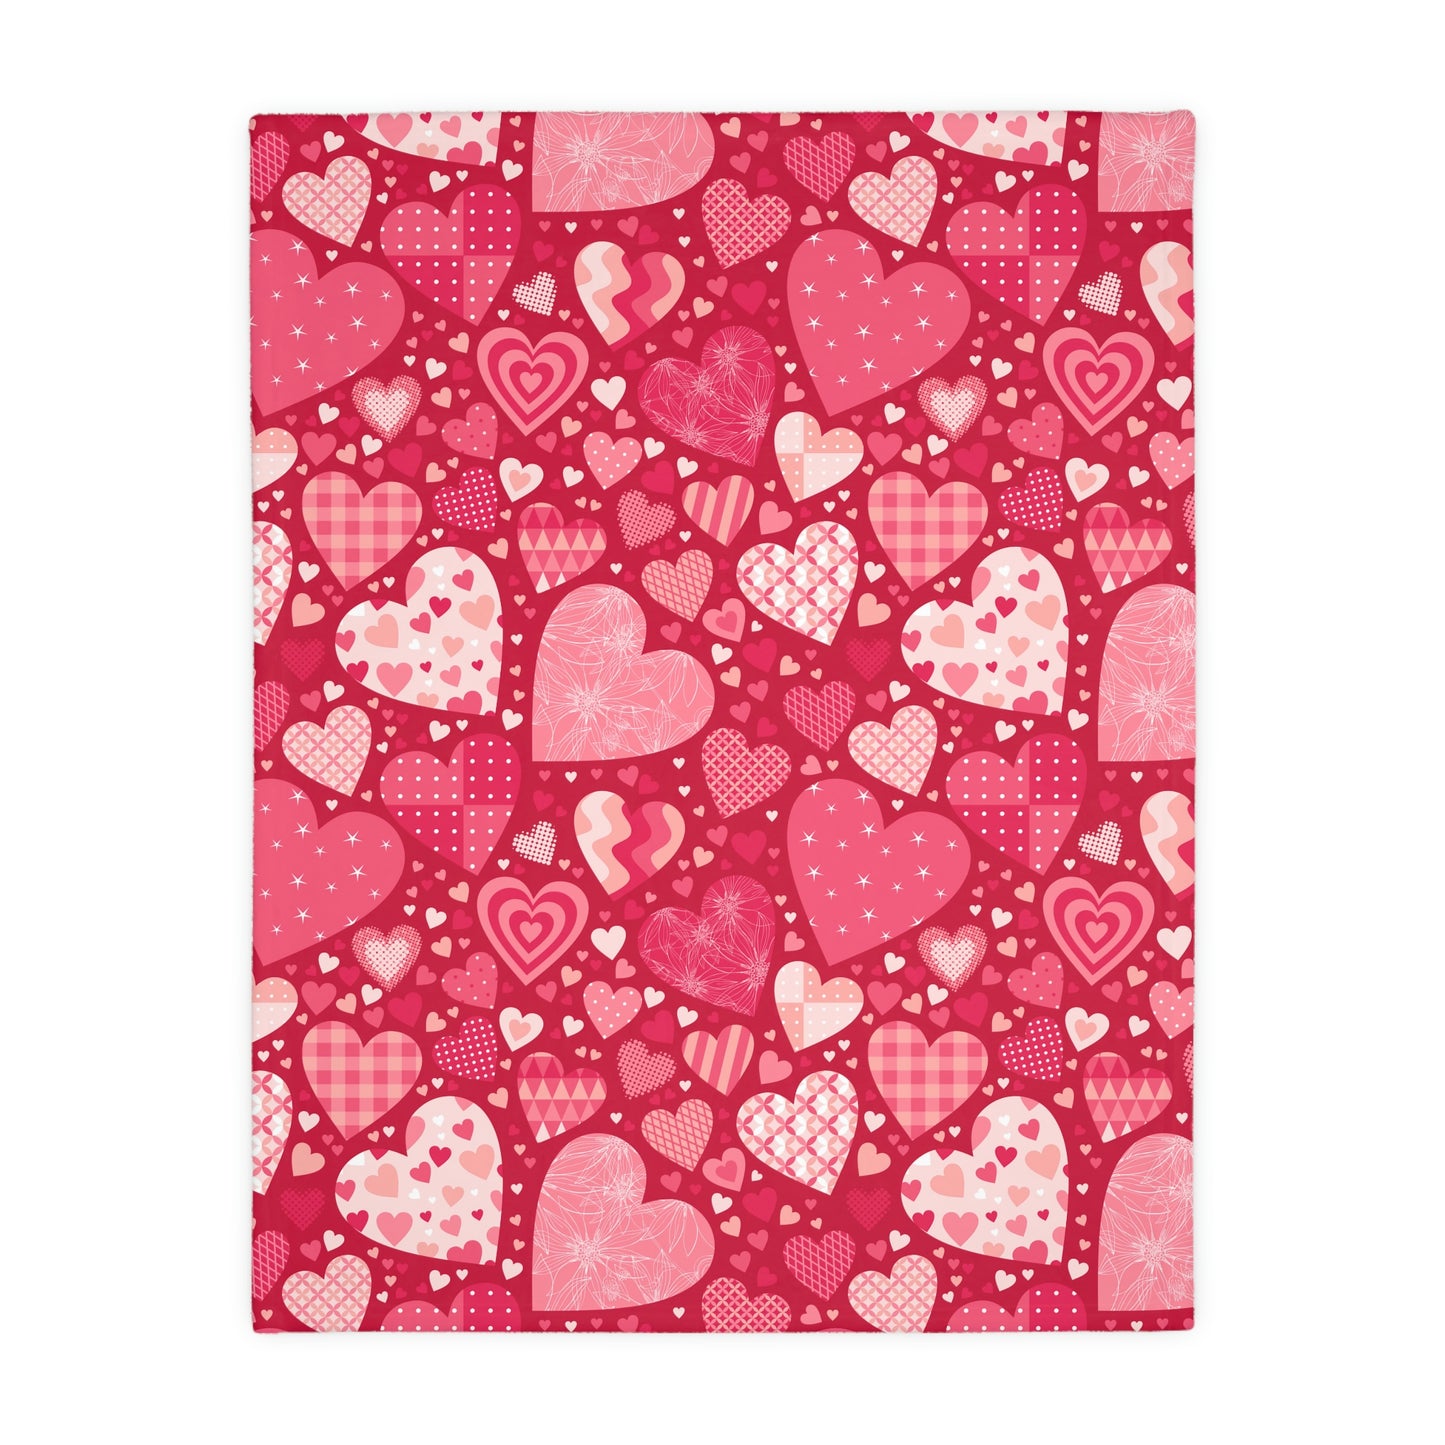 Blissful Hearts Velveteen Minky Blanket (Two-sided print)